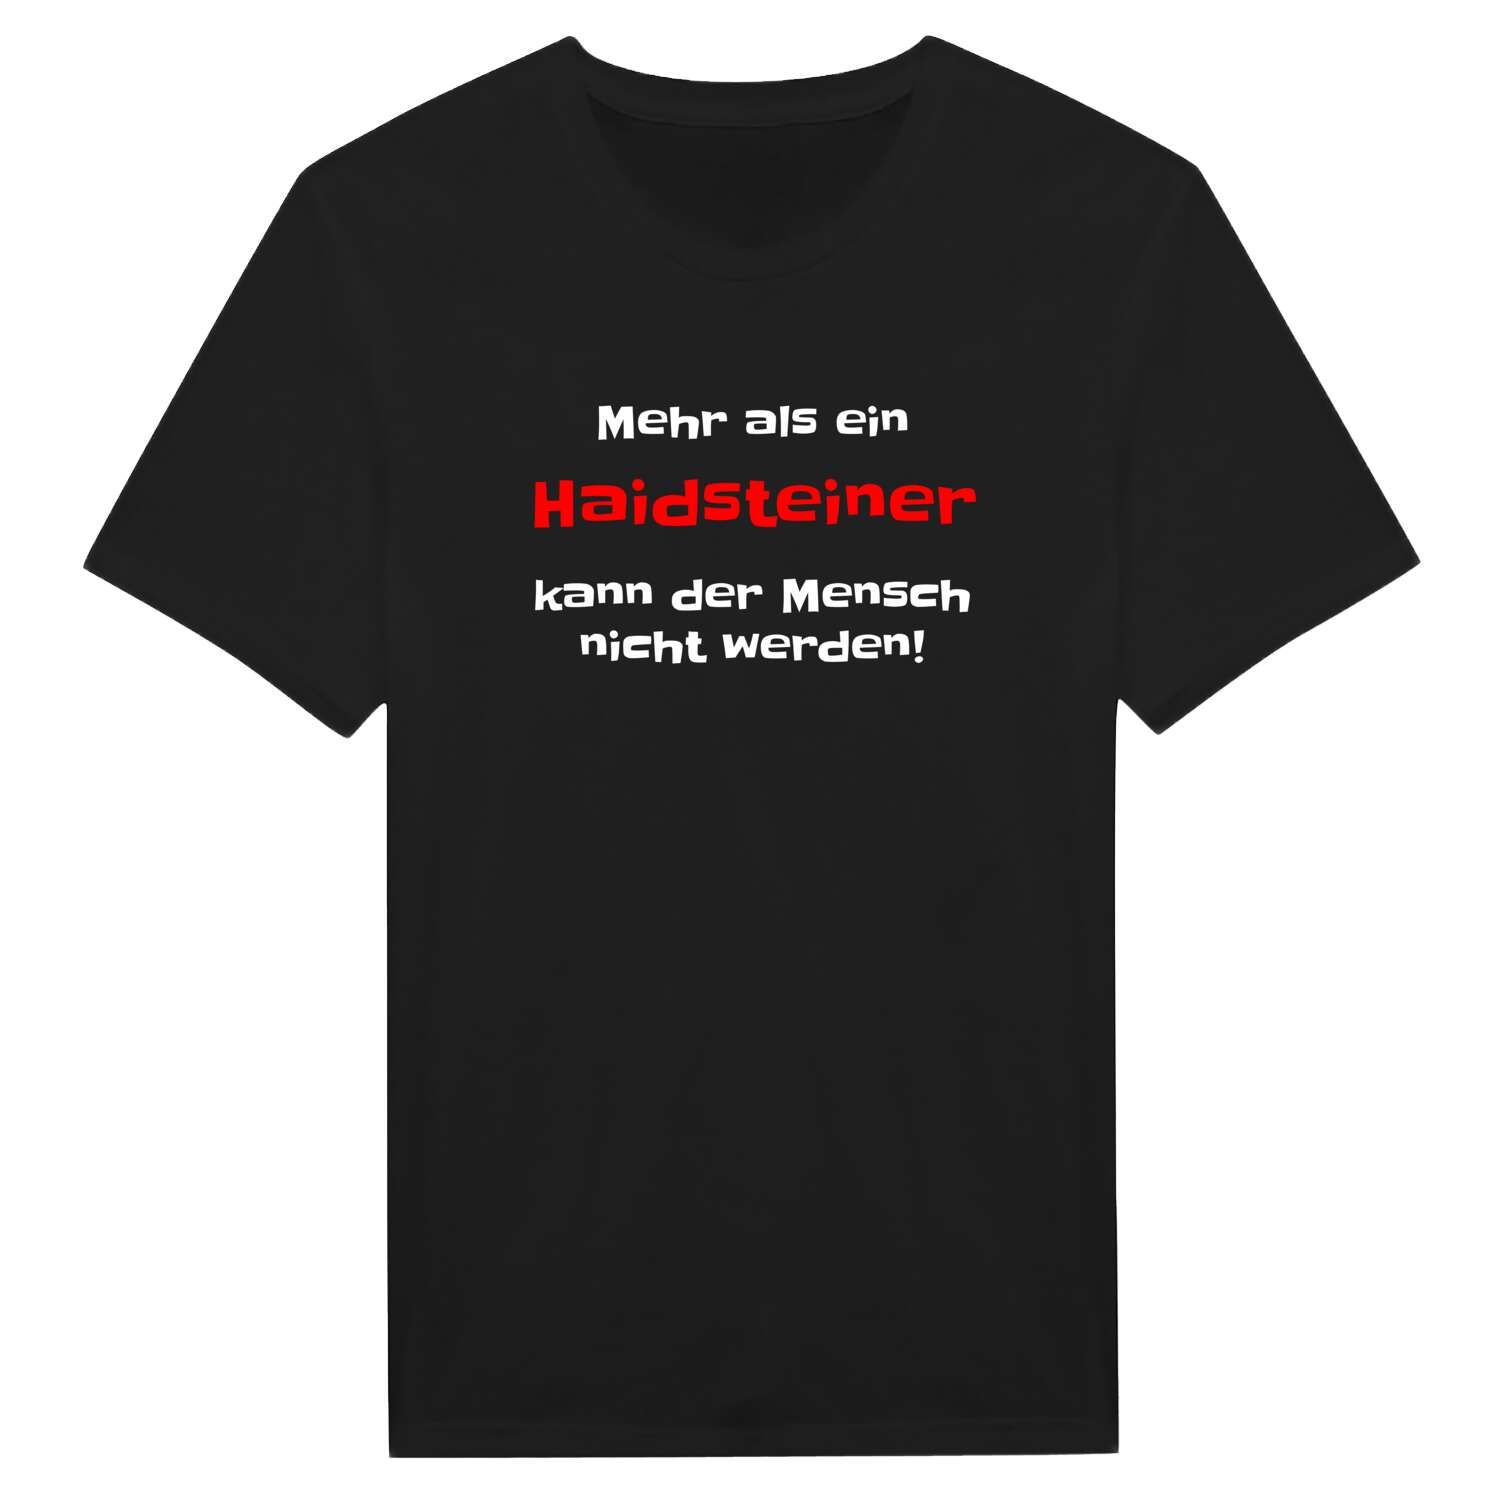 Haidstein T-Shirt »Mehr als ein«